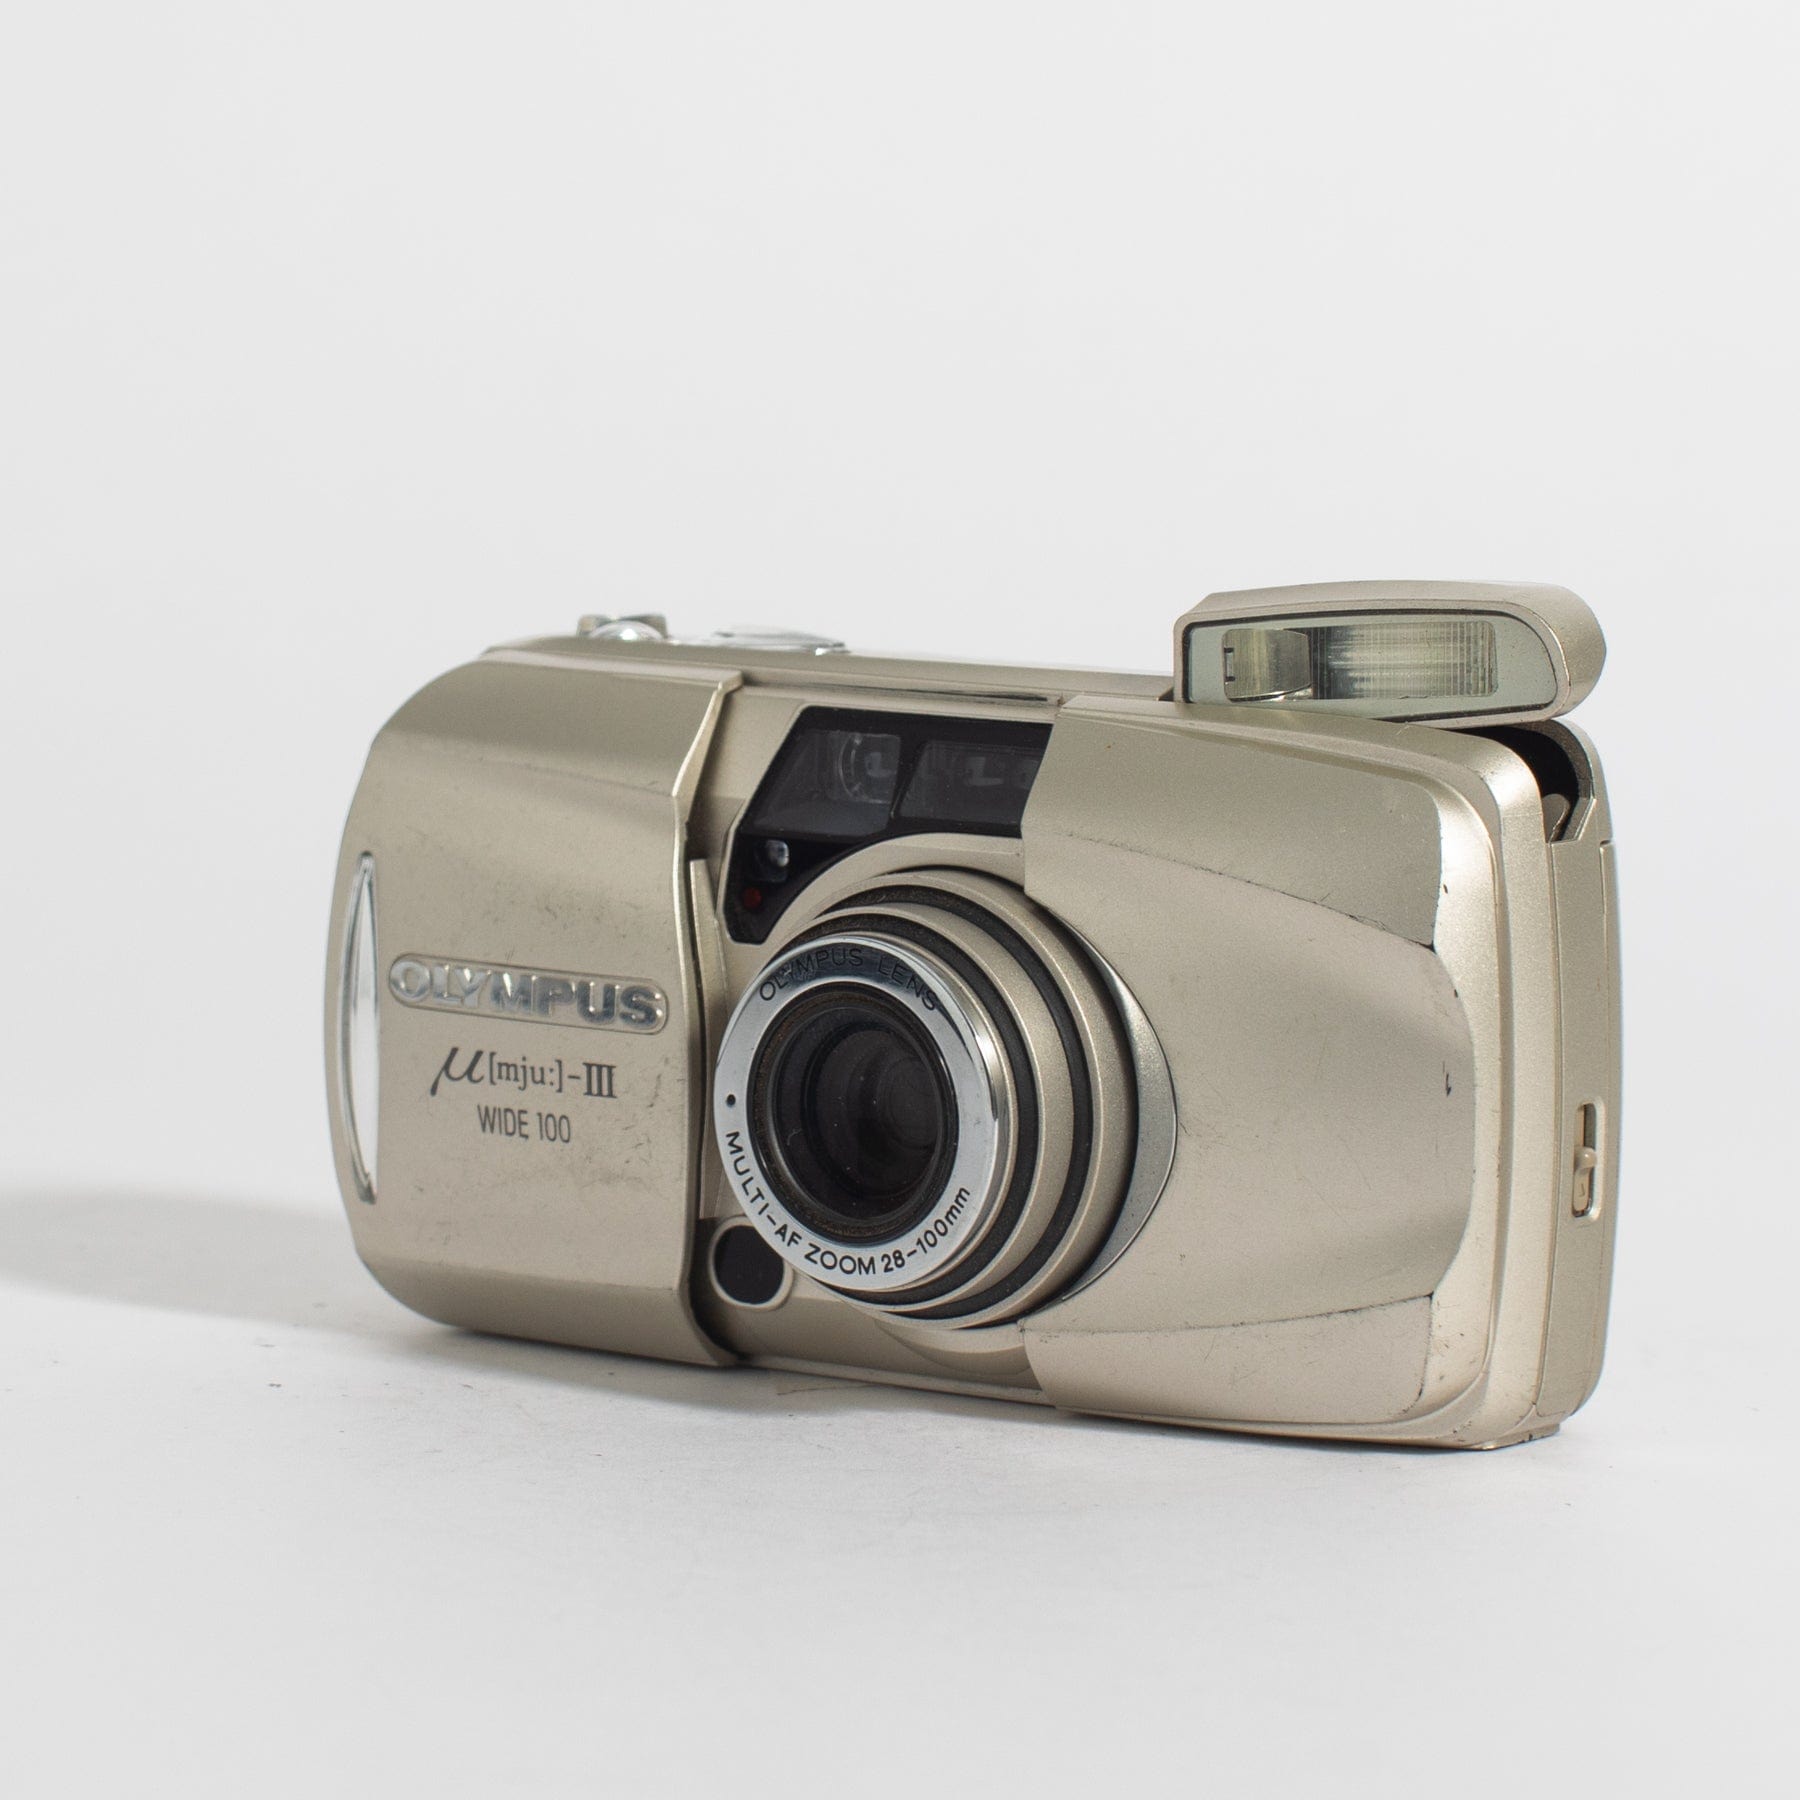 Olympus Mju-III Wide 100 w/ 28-100mm lens – Film Supply Club